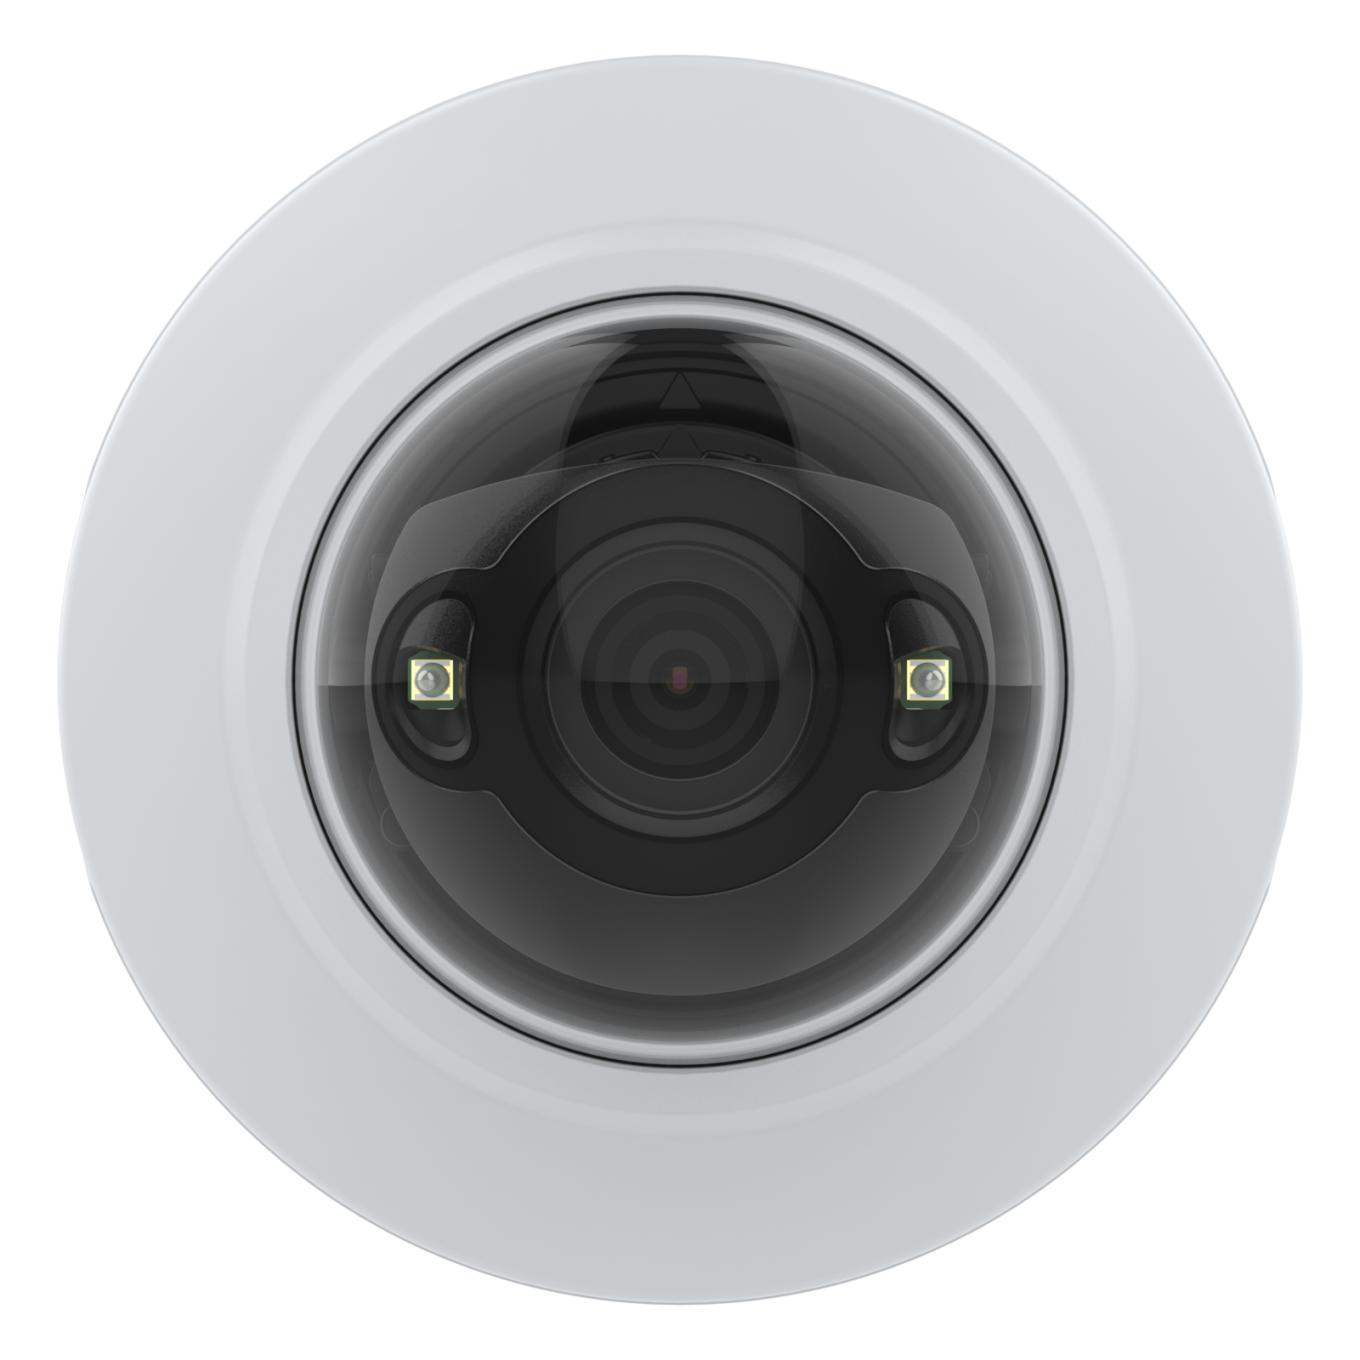 AXIS M4215-LV Dome Camera, widok z przodu, biała ramka